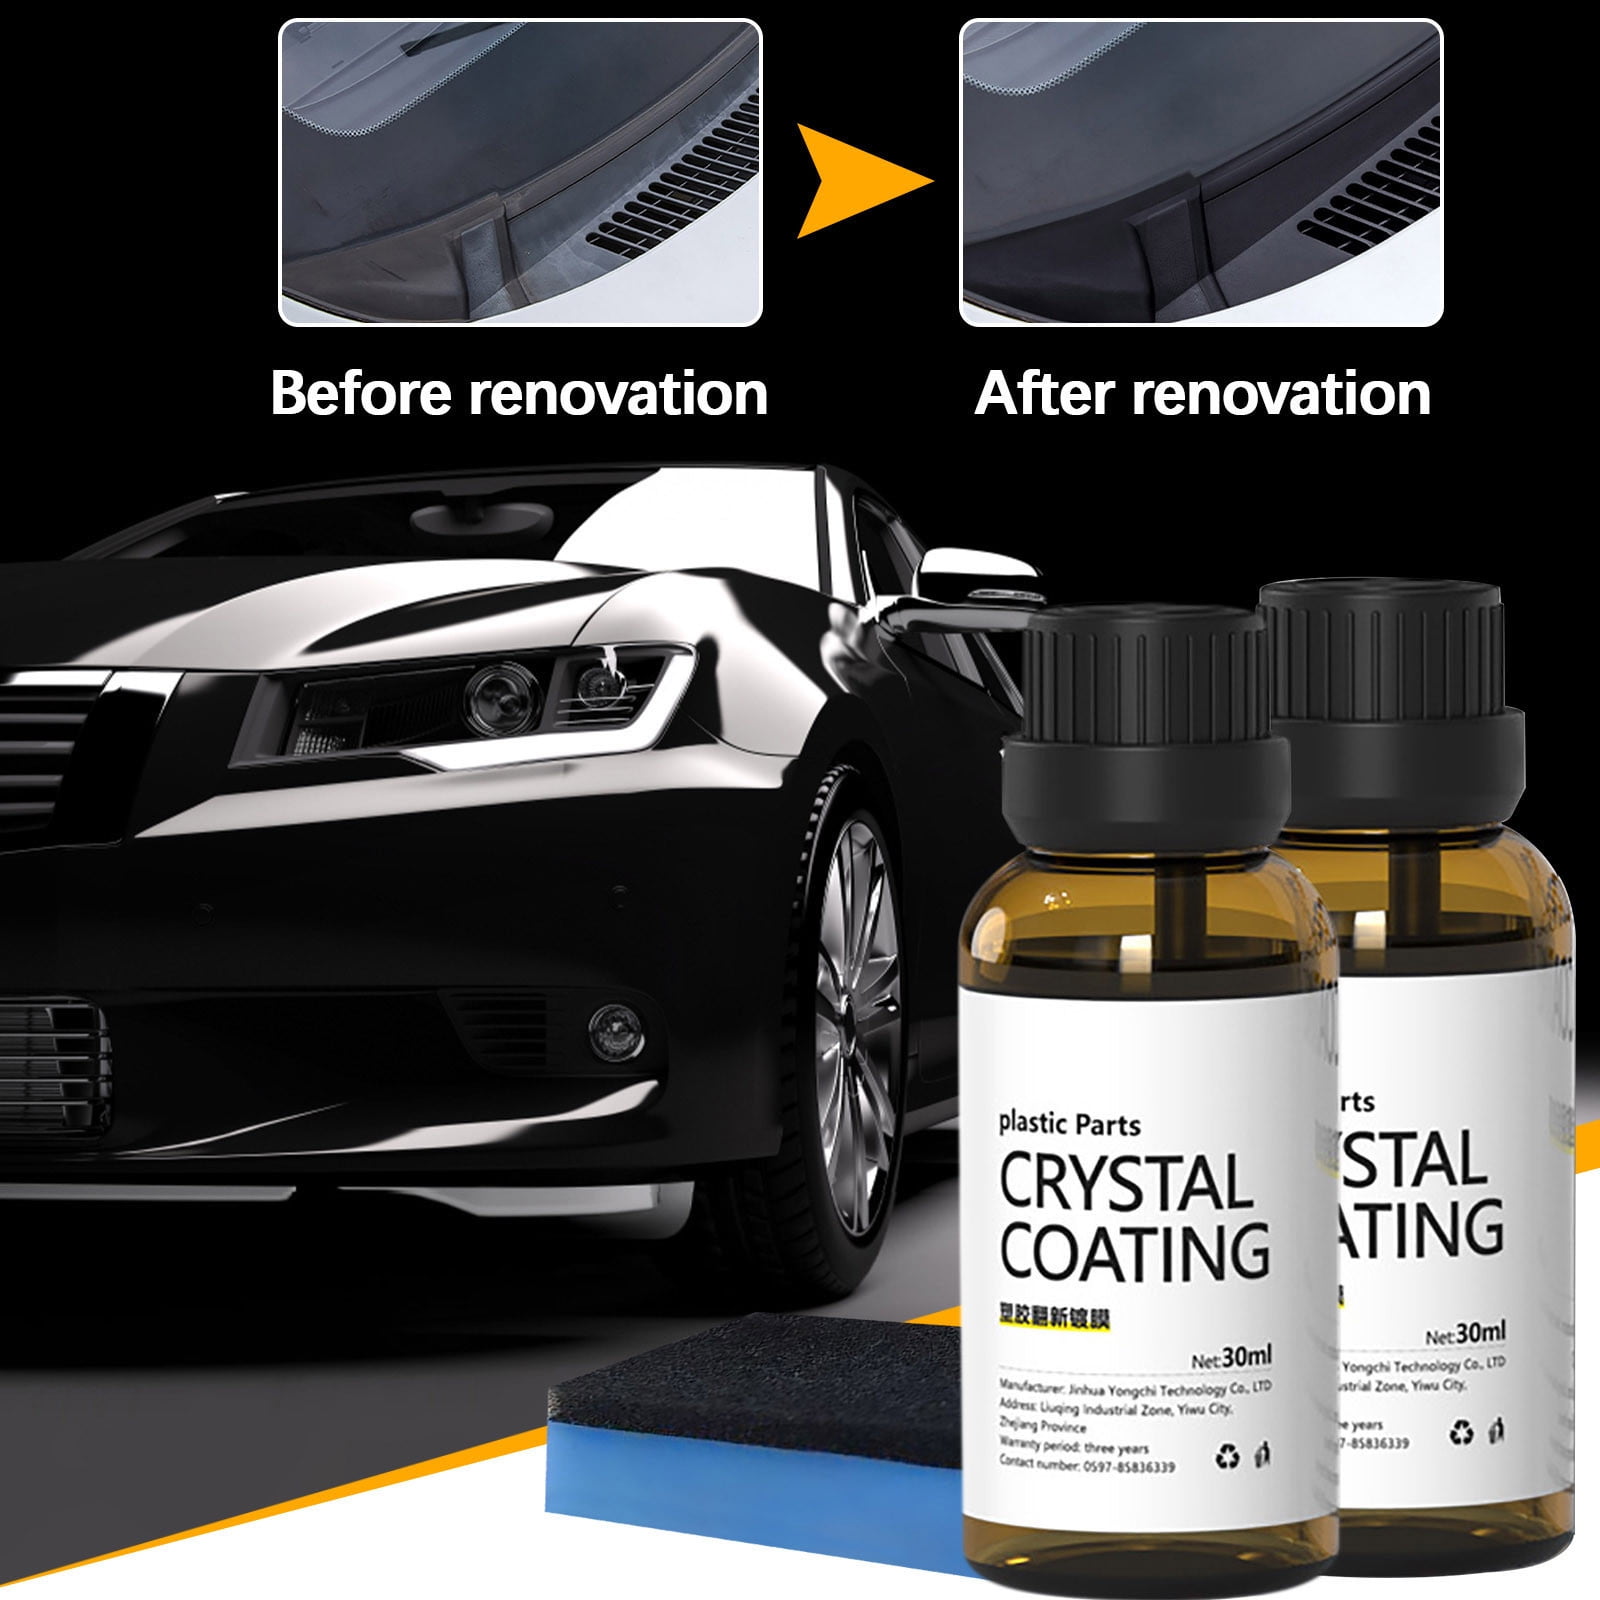 WOSLXM Cristal Coating para Plástico Del Carro, Crystal Coating for Car  Plastic Parts Crystal Coating, Plastic Refreshing Car Black, Long Lasting  Car